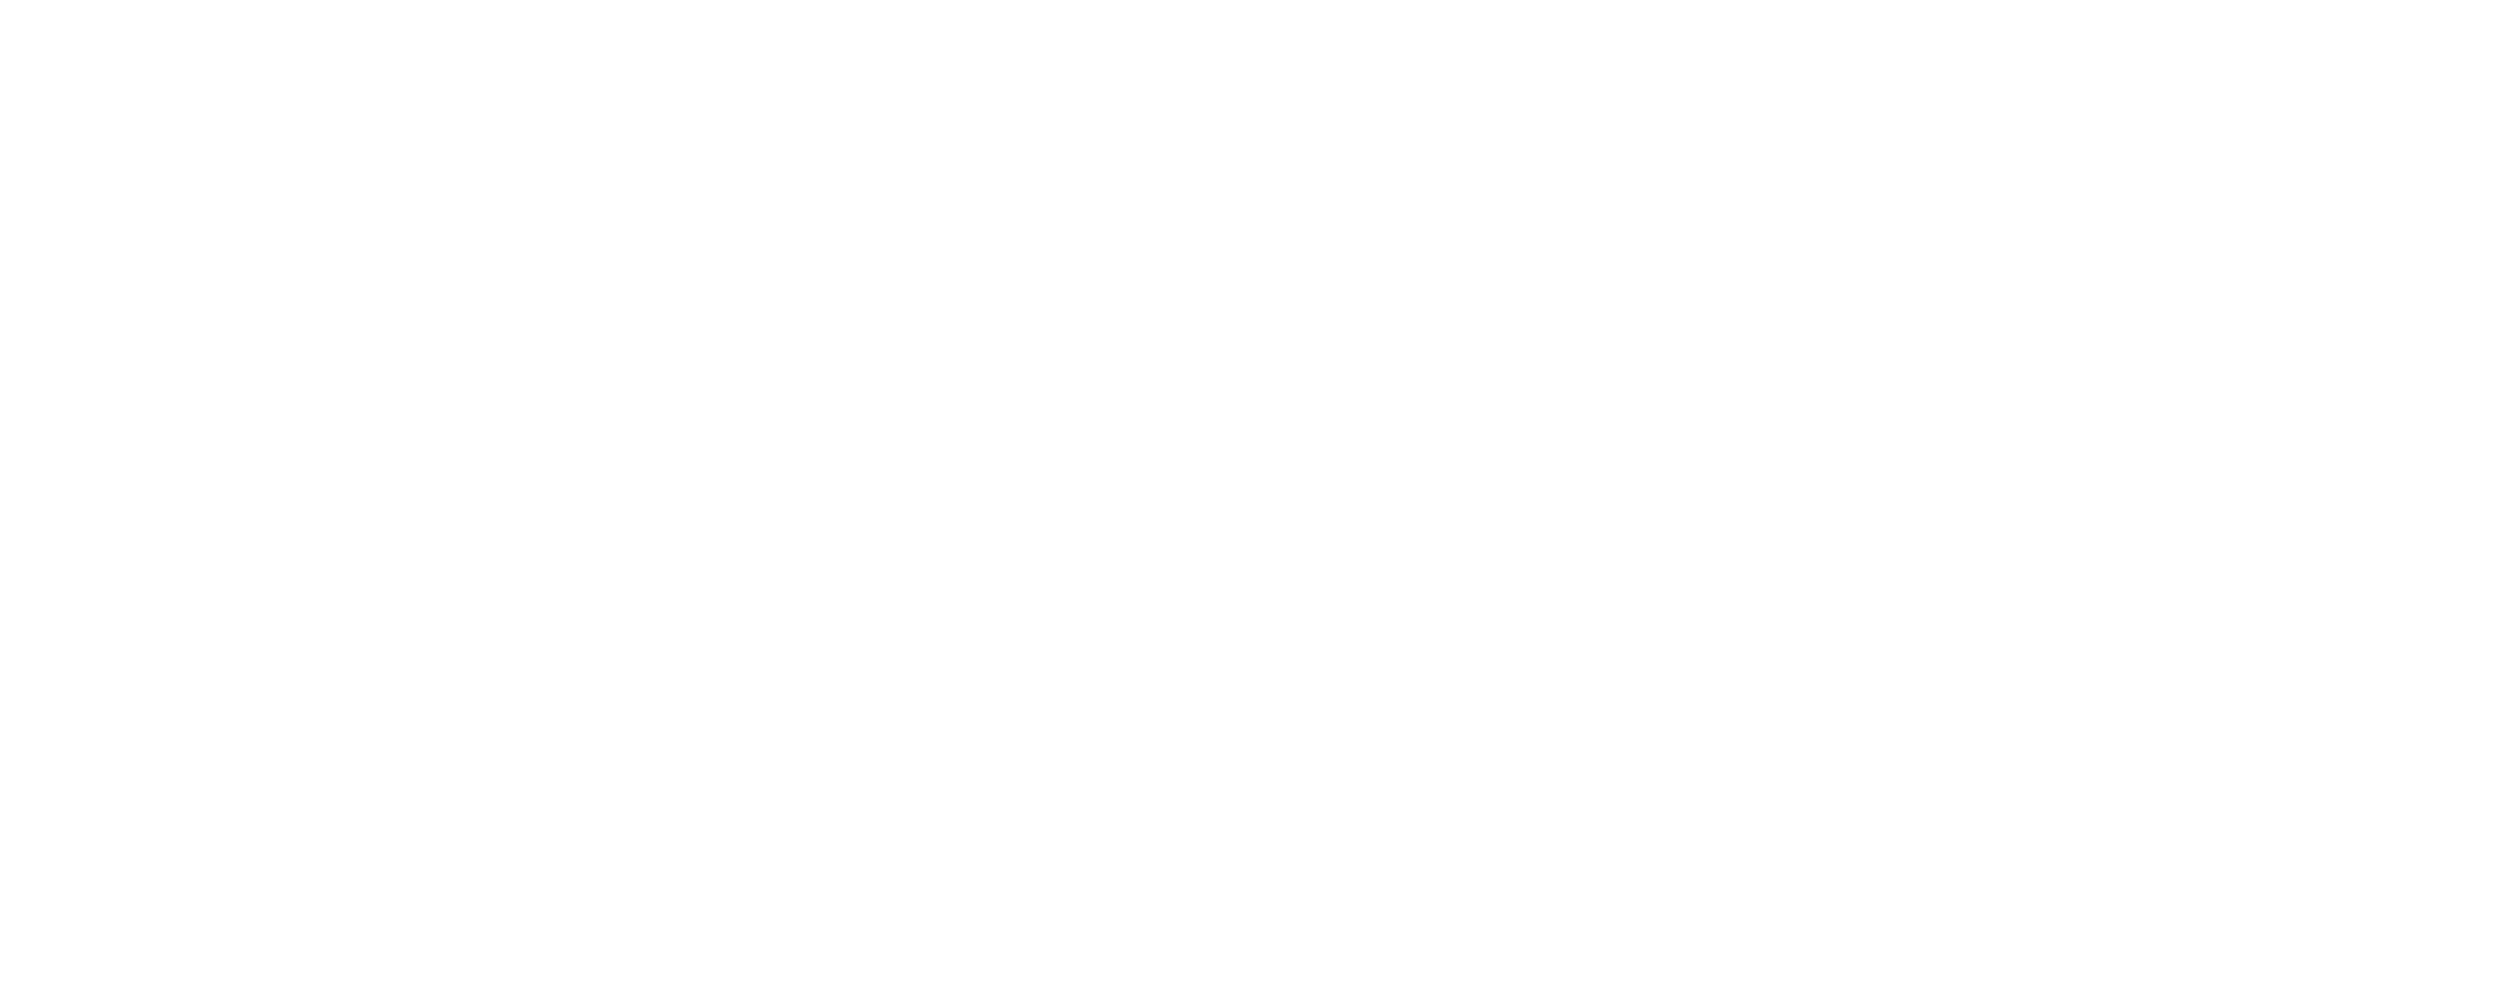 Lancaster Montessori School